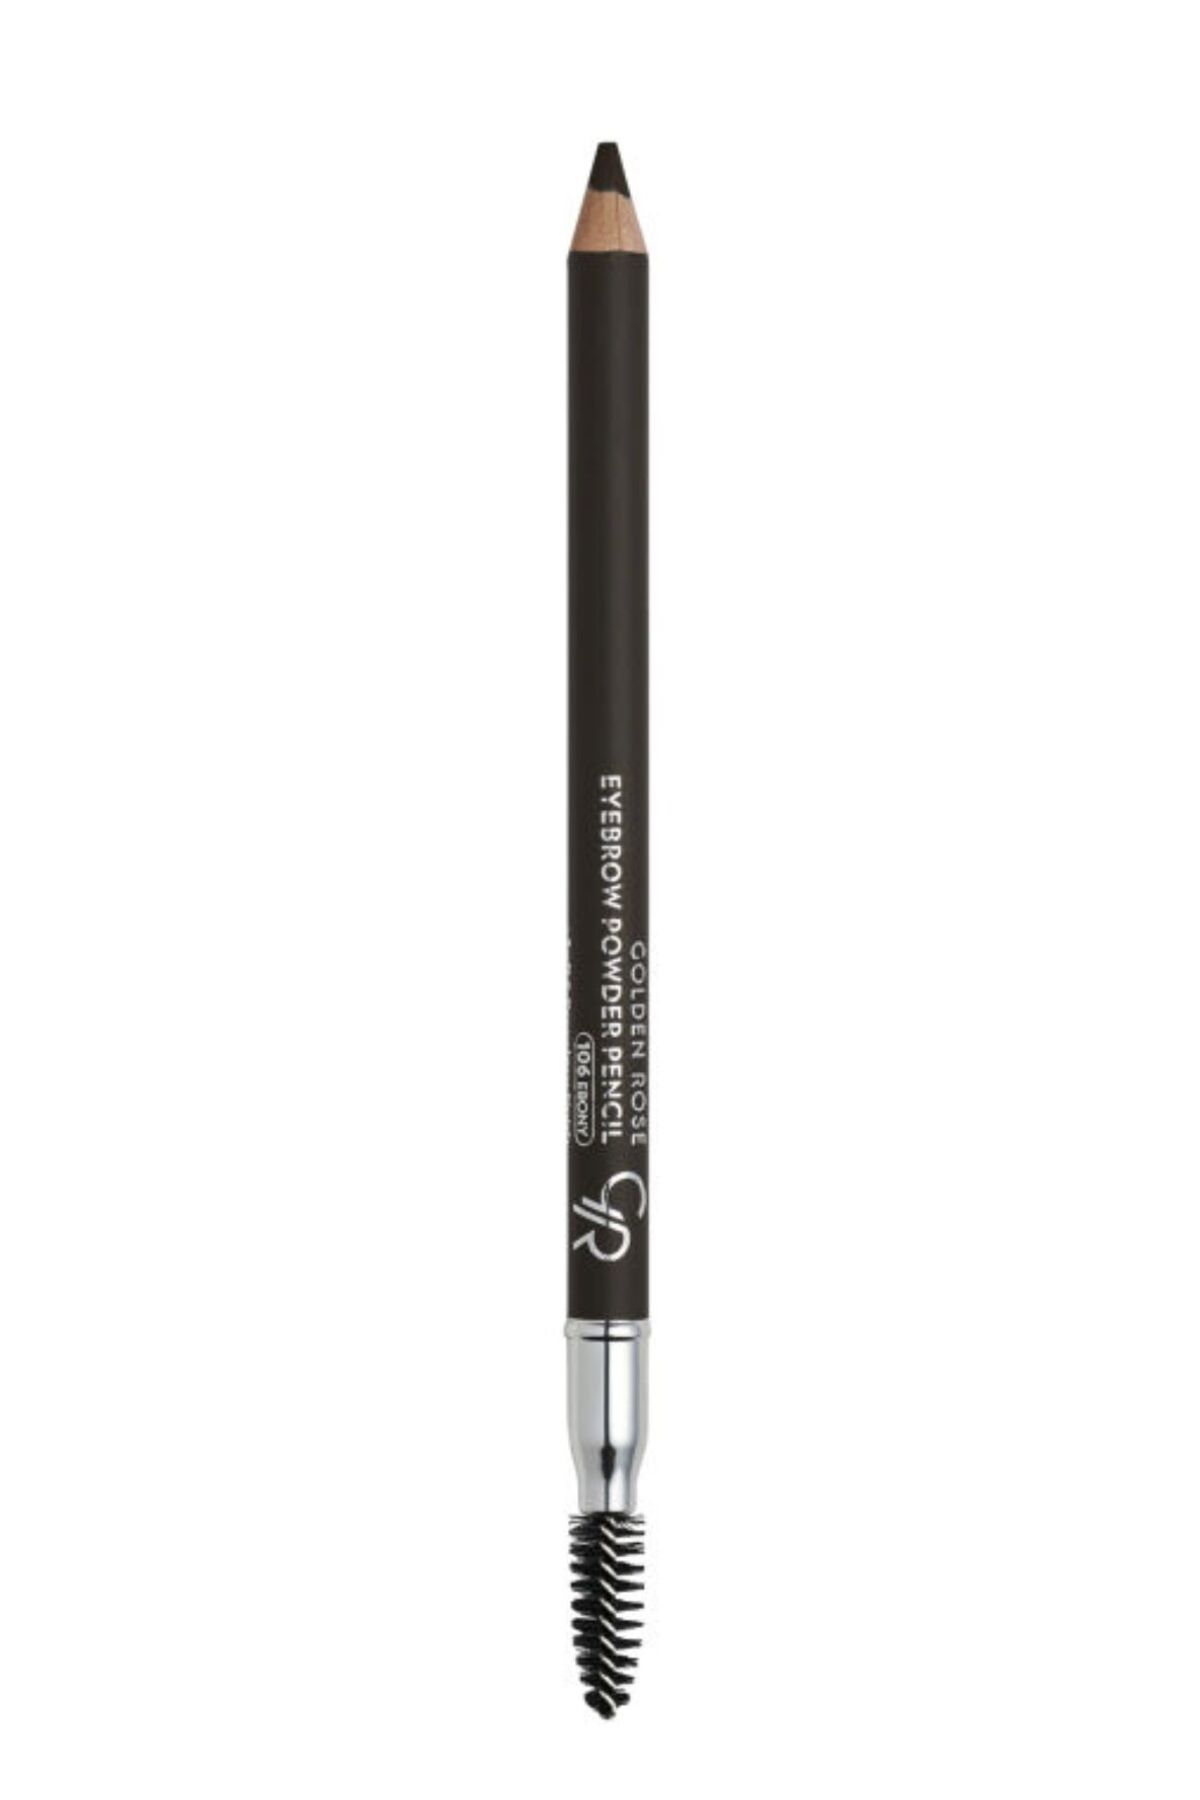 Golden Rose Eyebrow Powder Pencil - 106 Ebony - Pudralı Kaş Kalemi